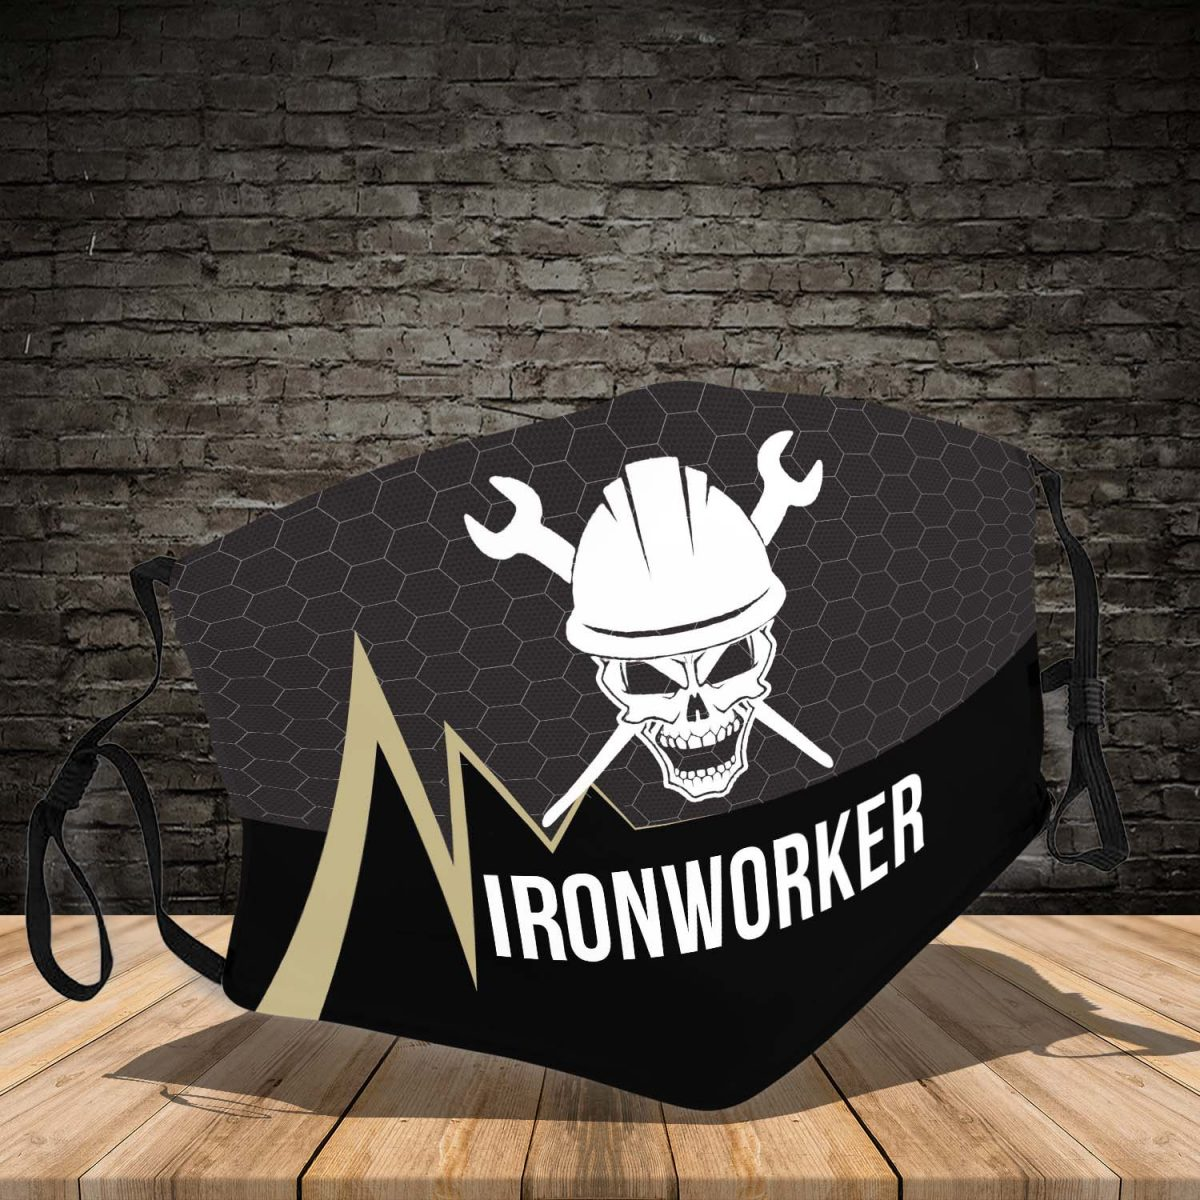 Ironworker 3d face mask